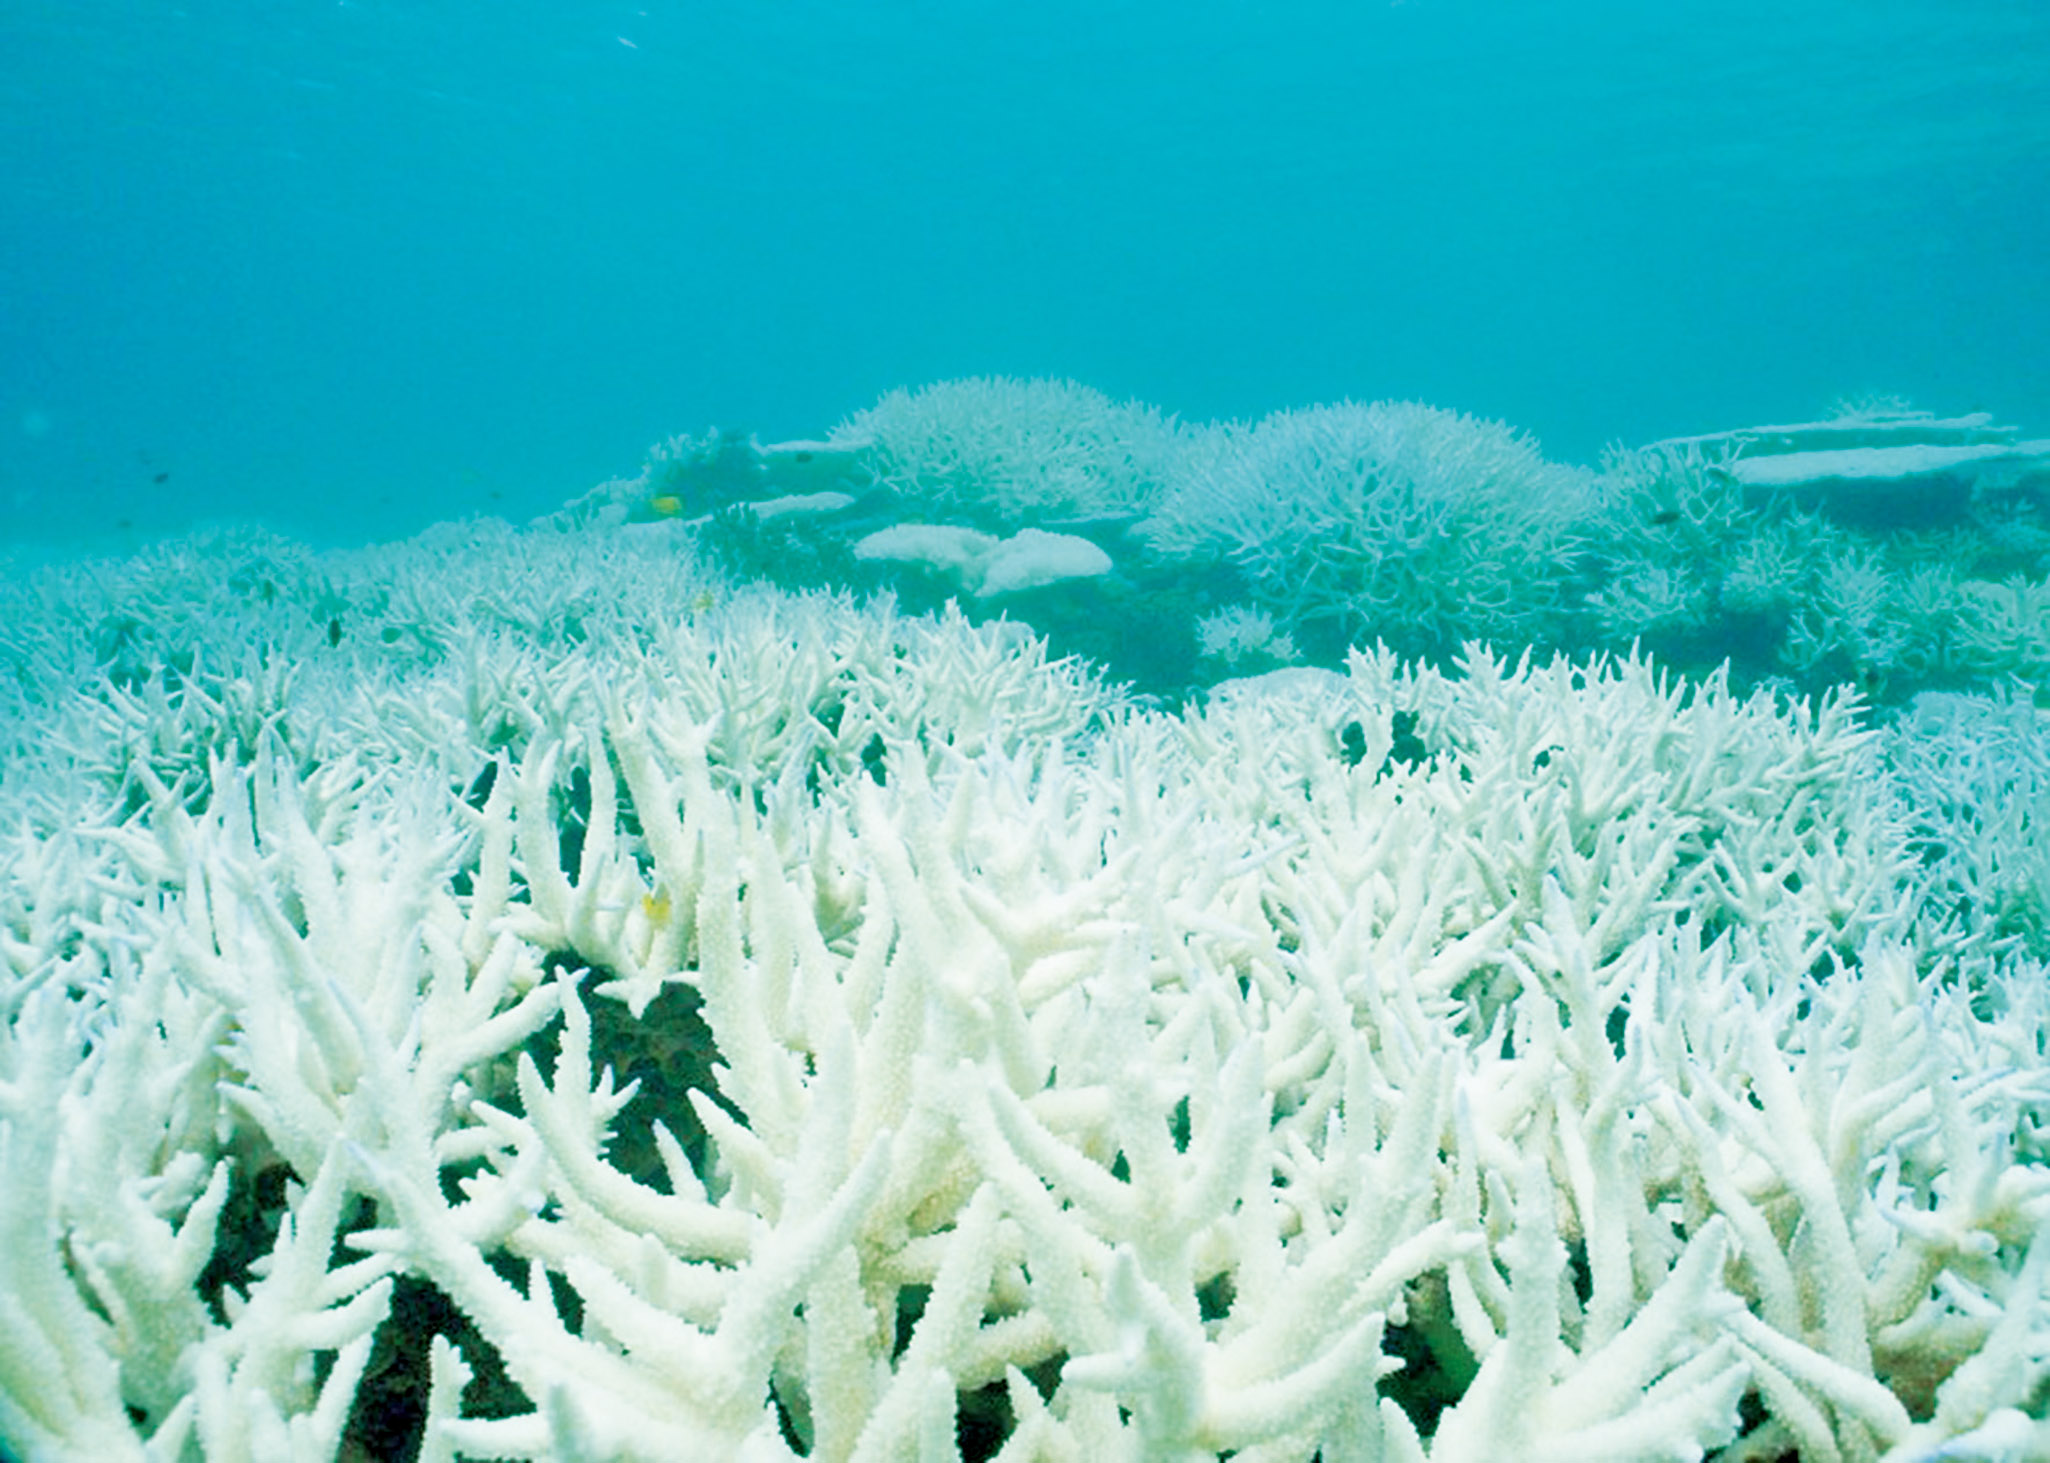 大堡礁北面67%珊瑚死亡